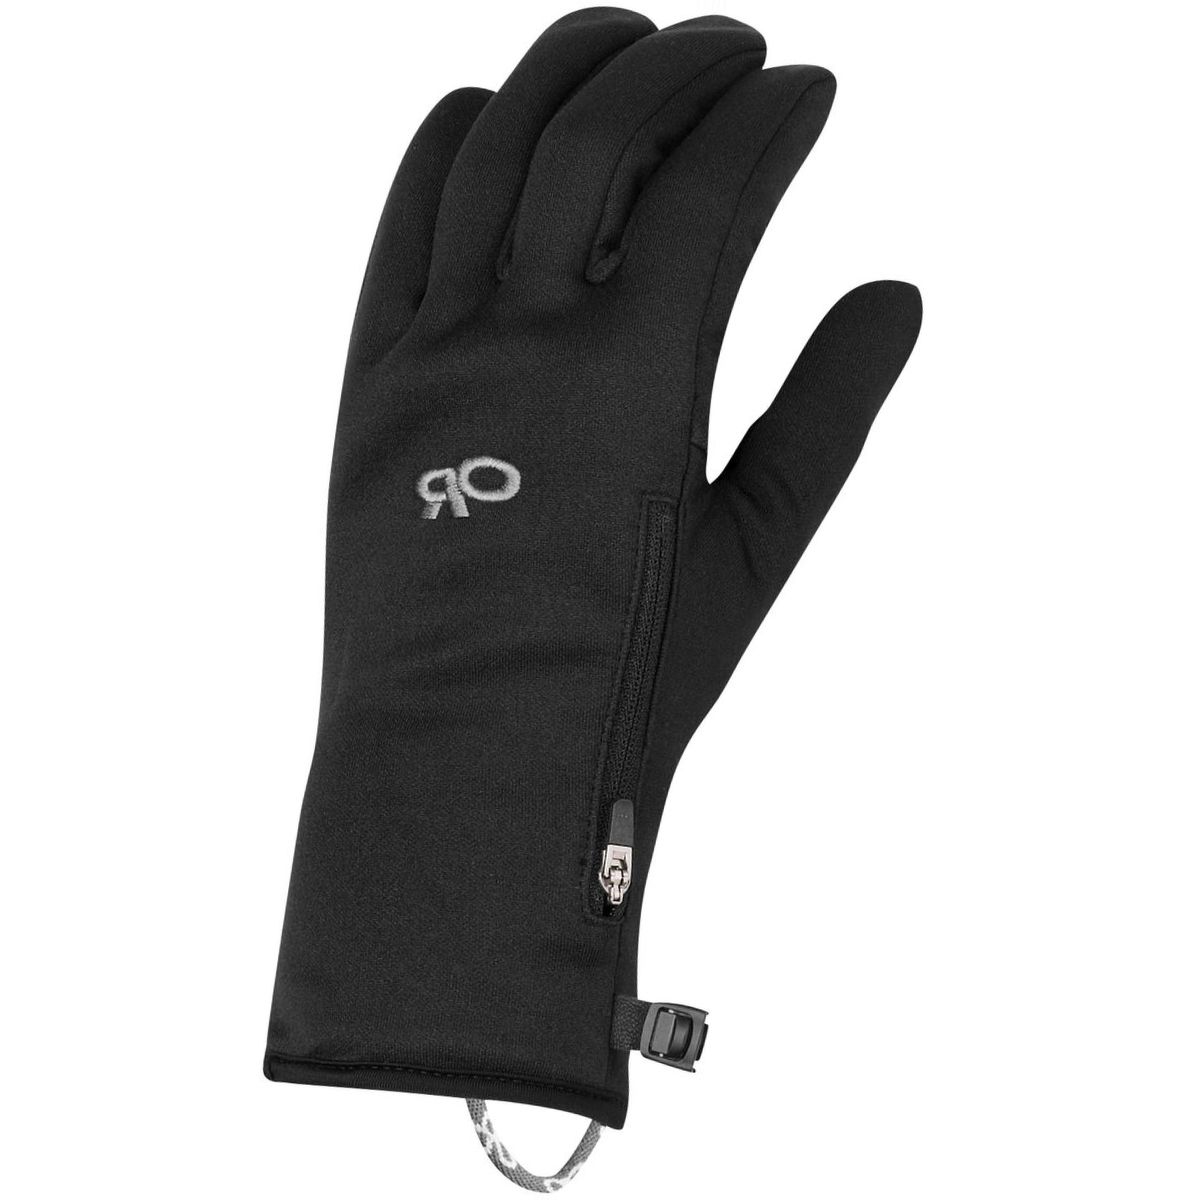 Outdoor Research Versaliner Glove - Men's